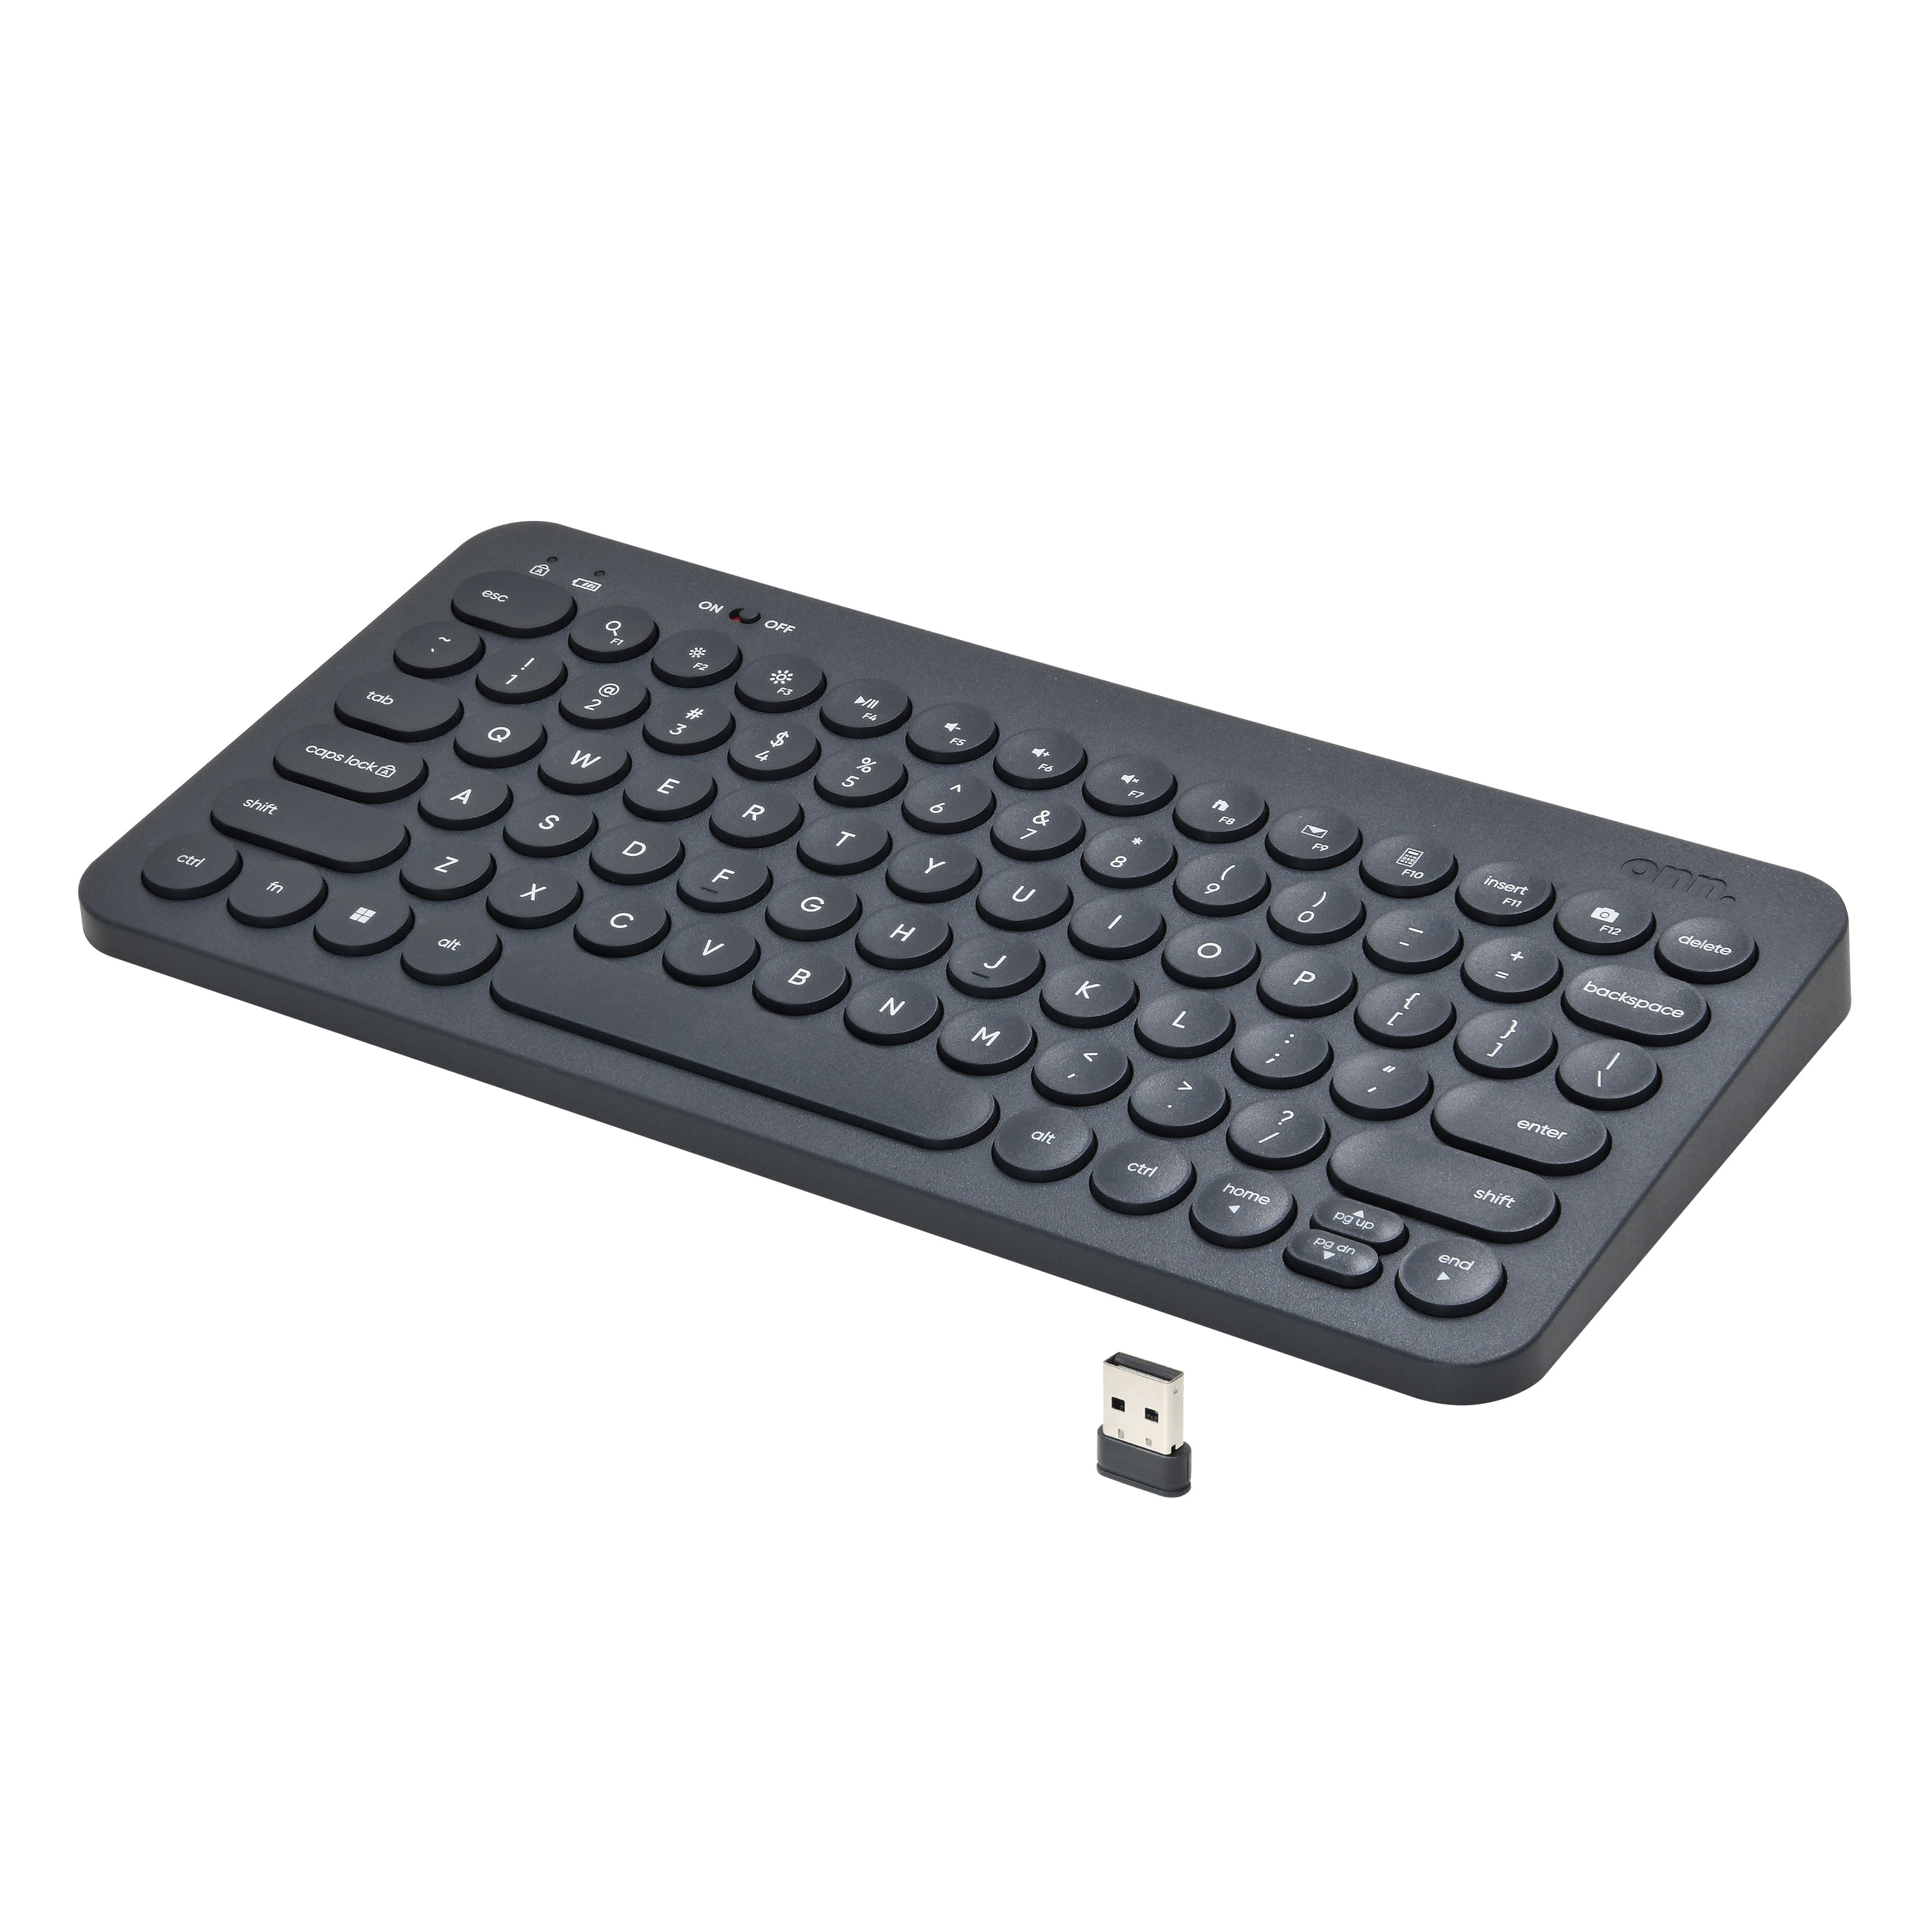 onn. Mini Compact Wireless Office Keyboard,USB Receiver, 78 Keys